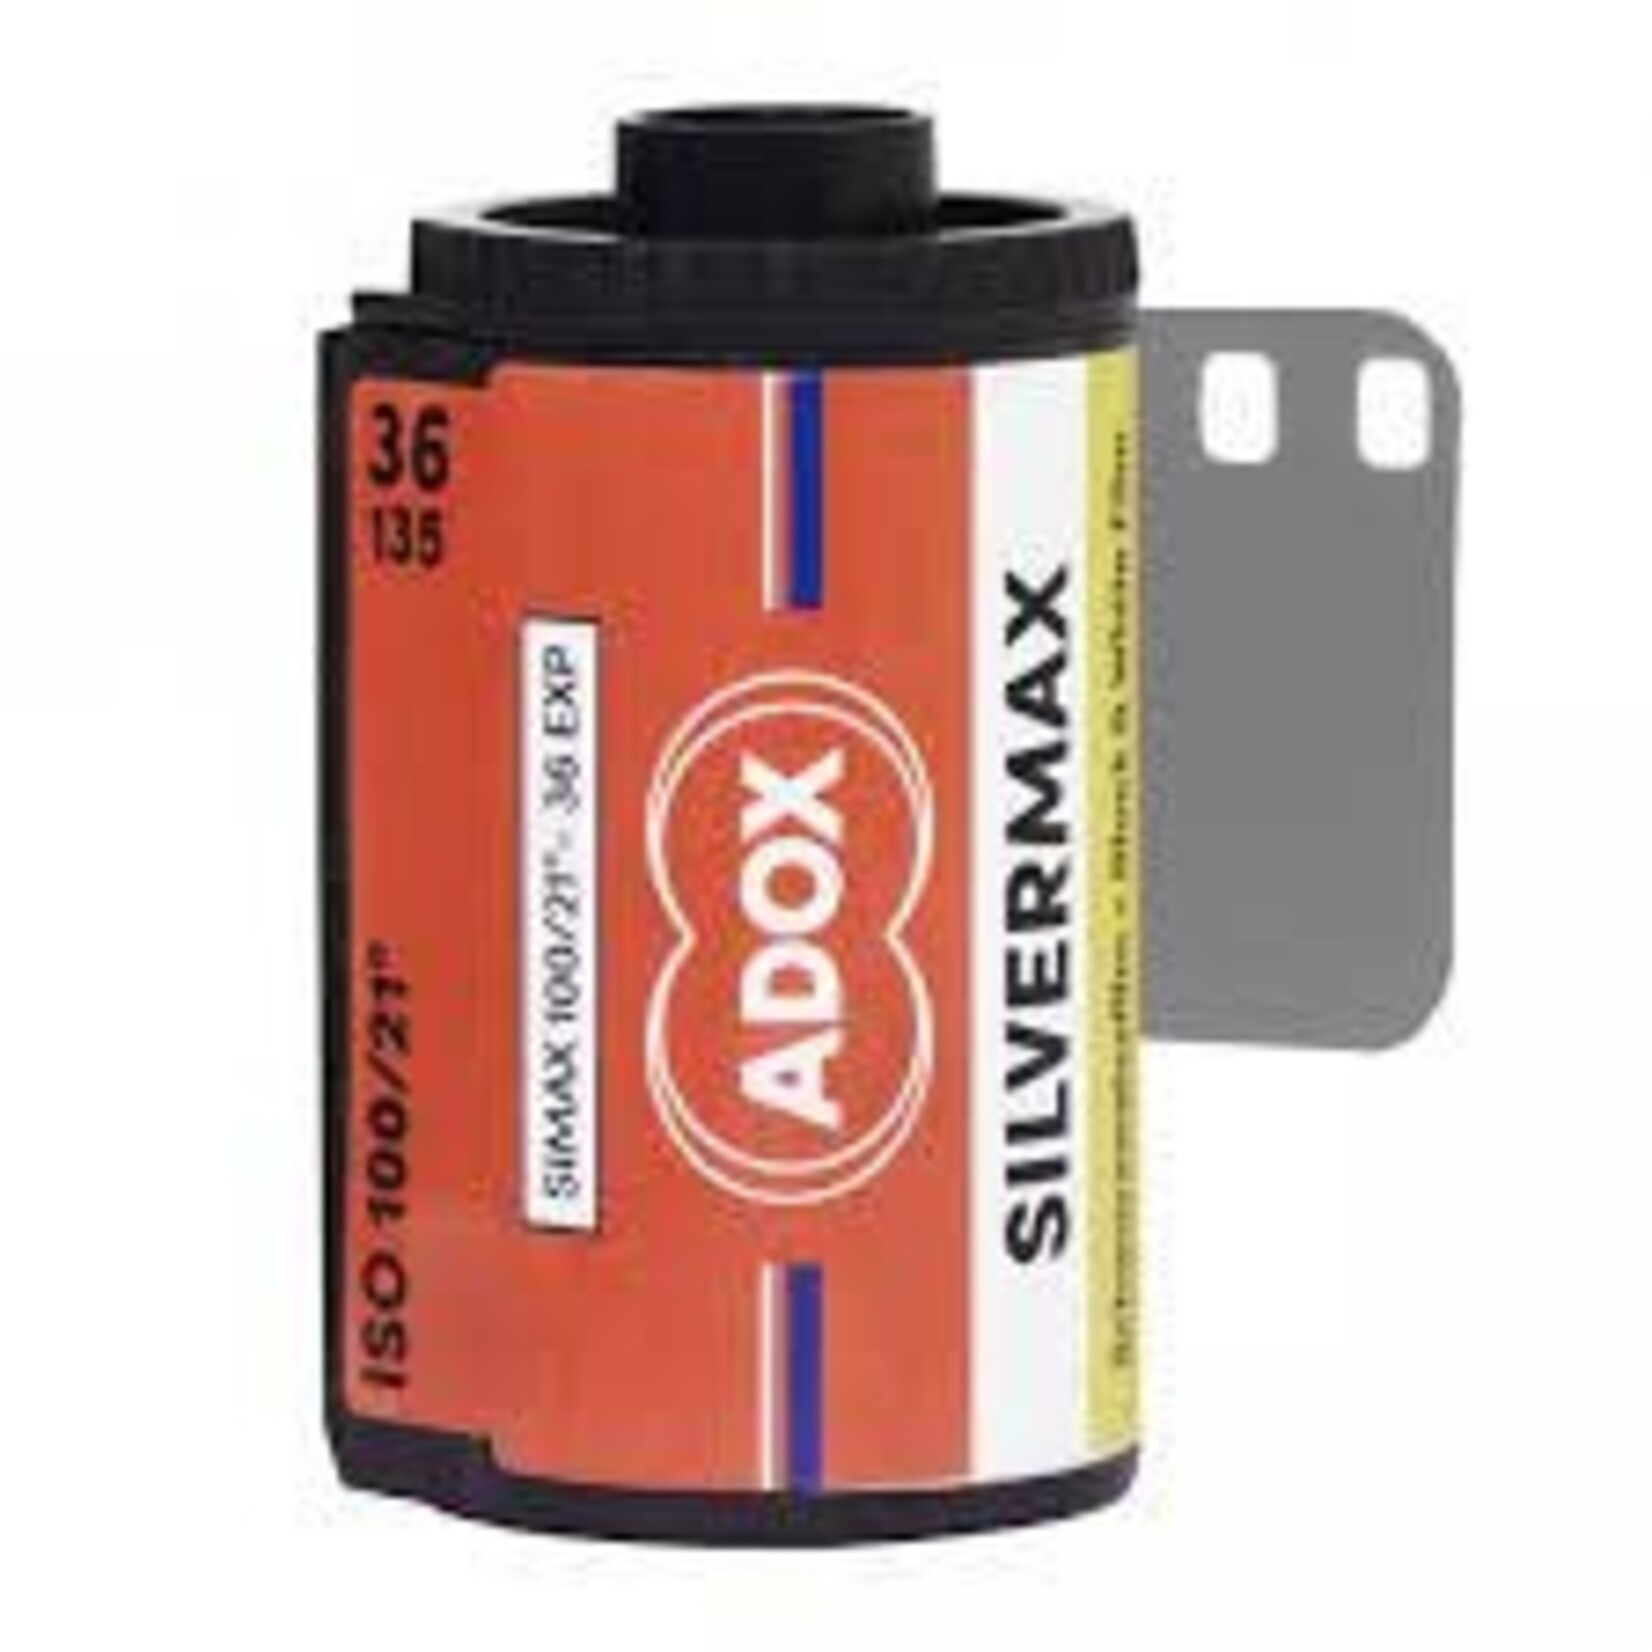 Adox Adox 35/100/36 Silvermax B&W